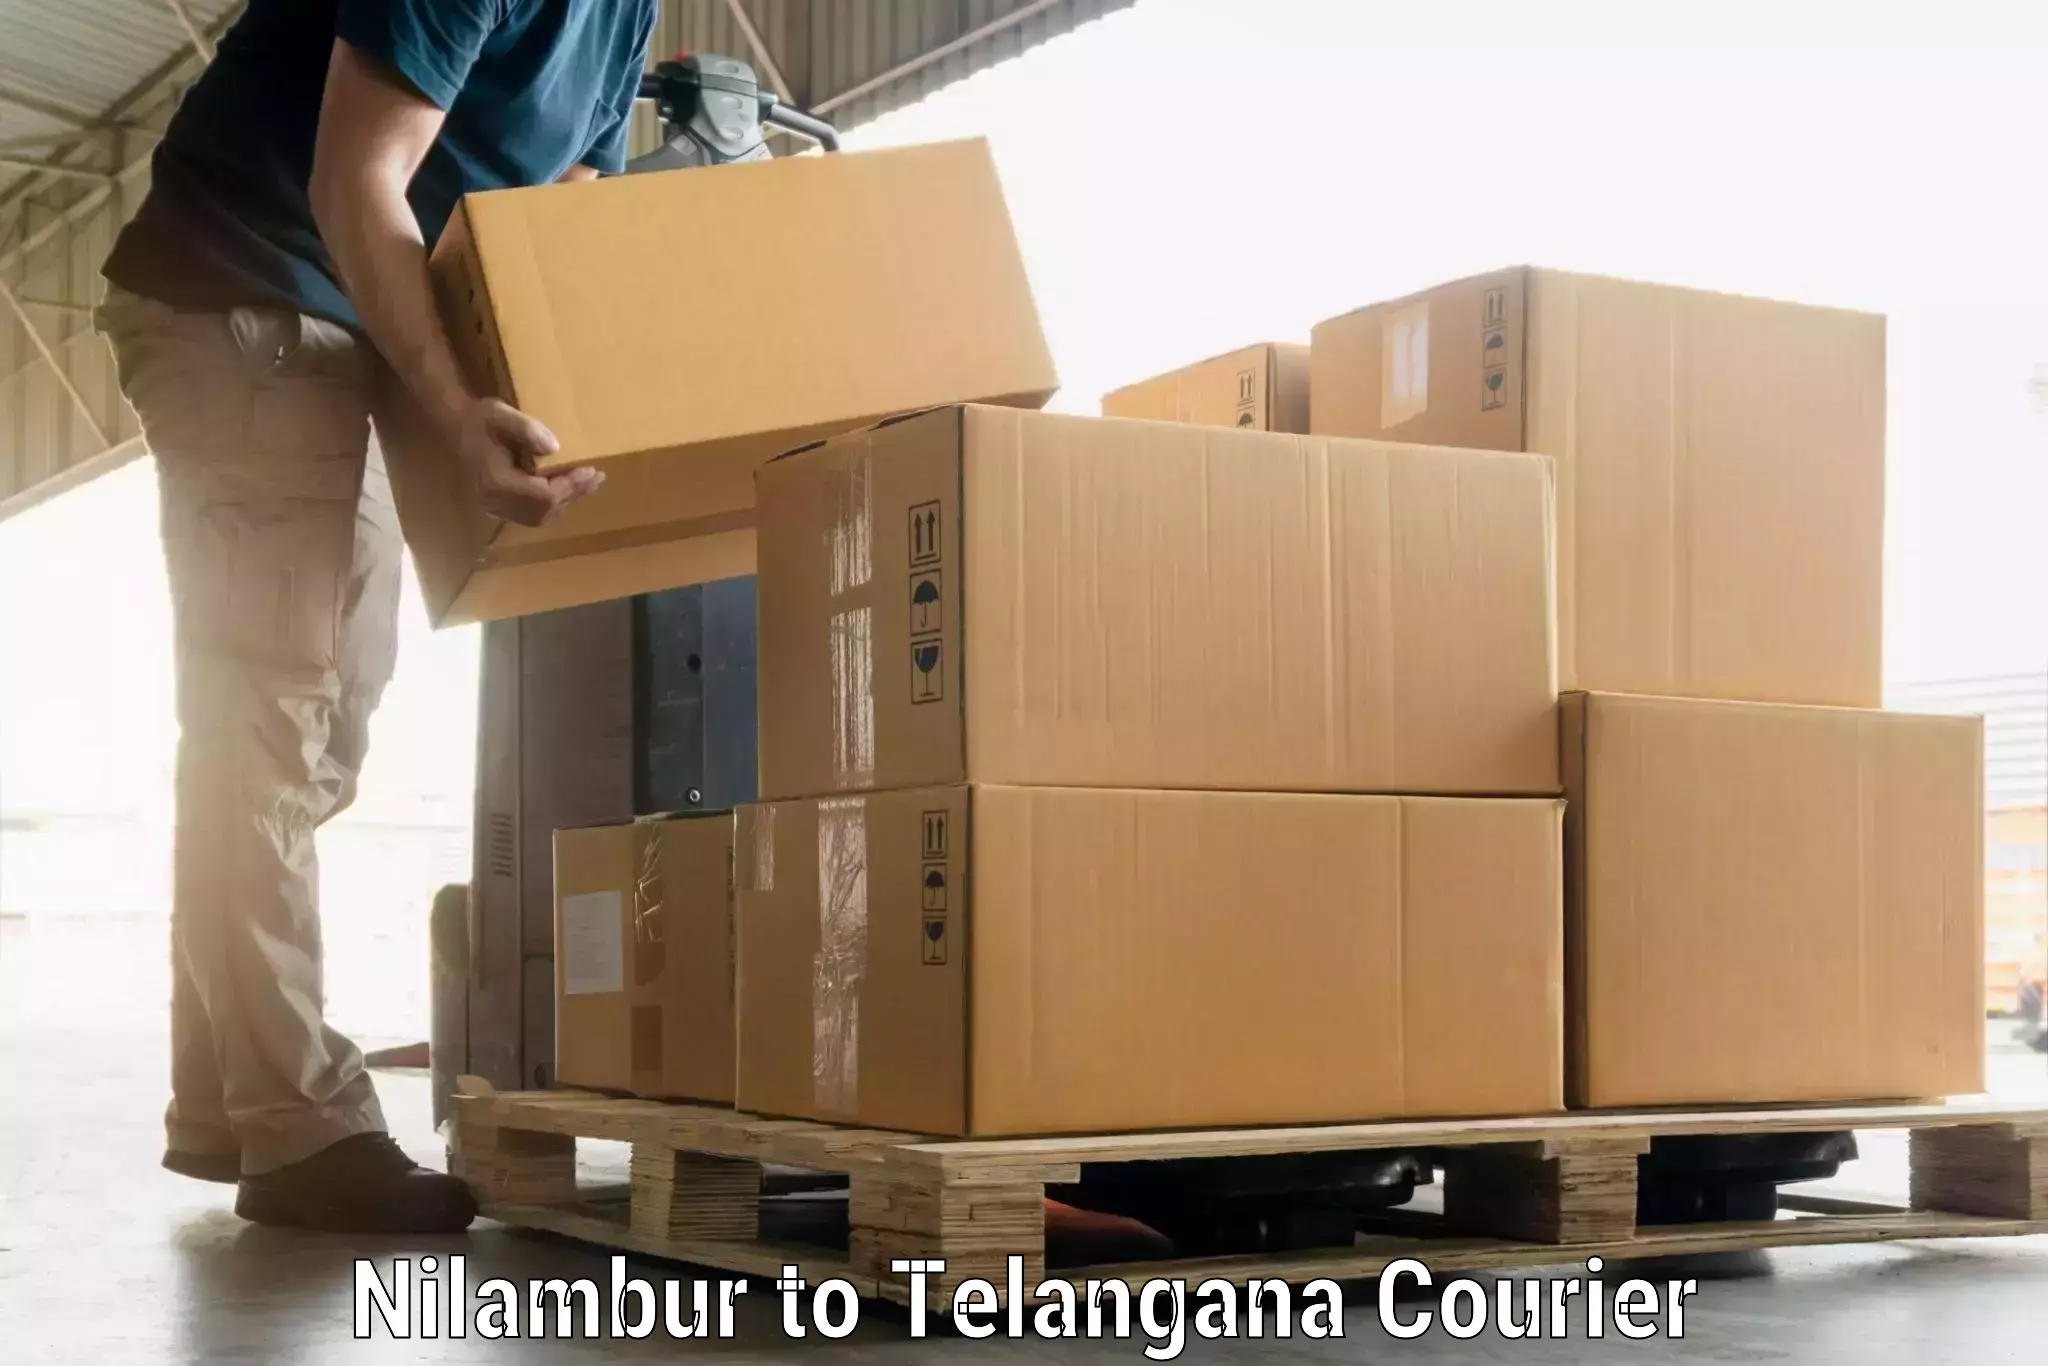 Luggage shipment specialists Nilambur to Danthalapally